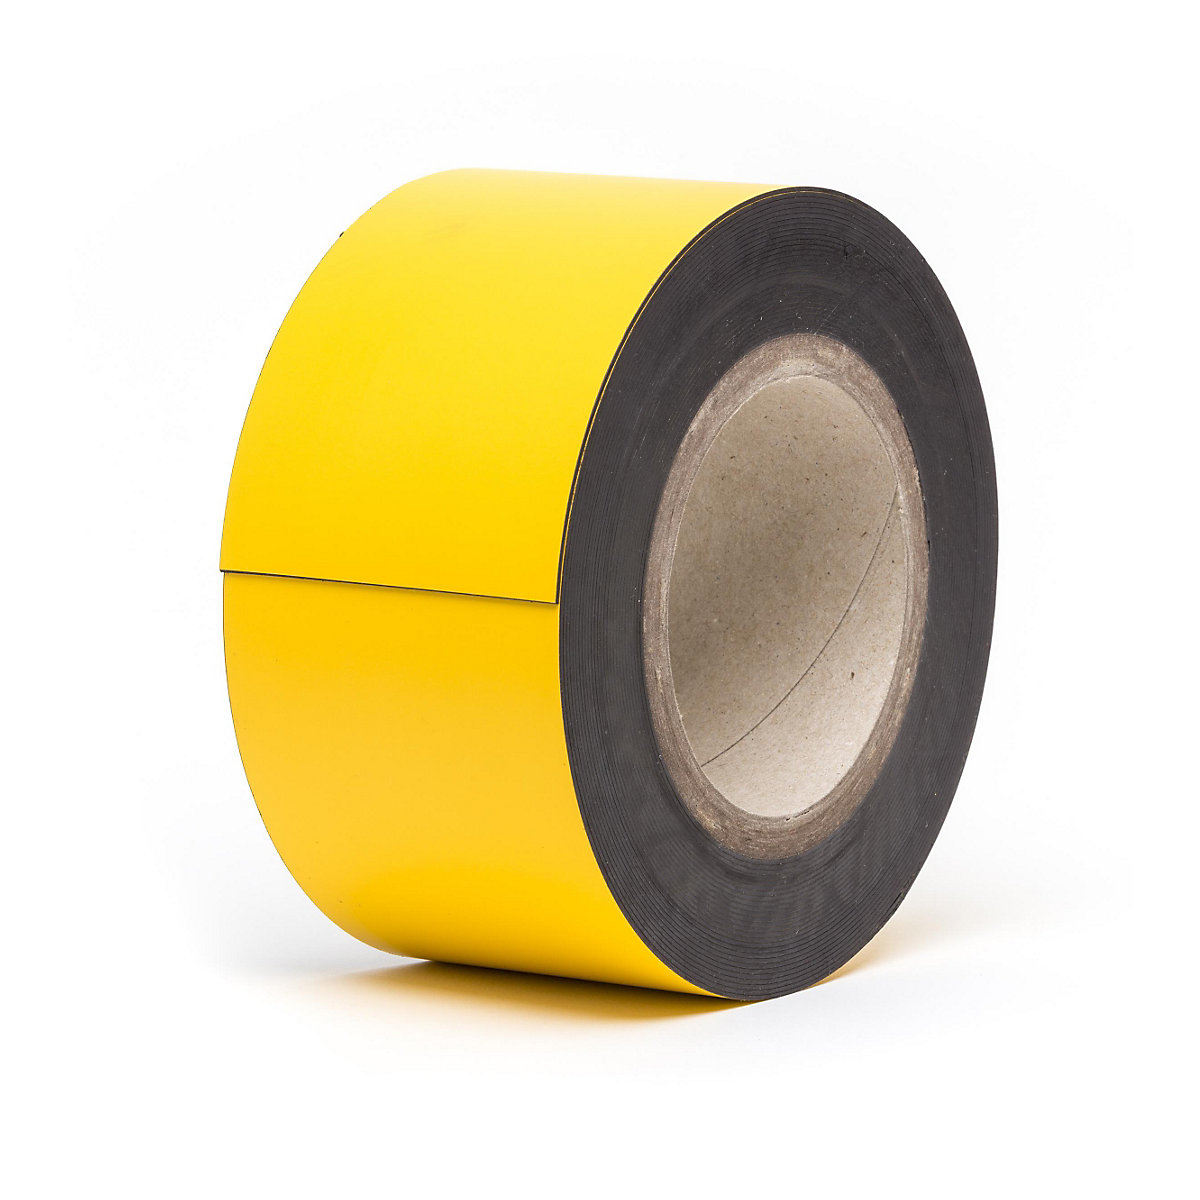 Rótulos magnéticos para almacén, mercancía en rollo, amarillo, altura 70 mm, longitud de rollo 10 m-17